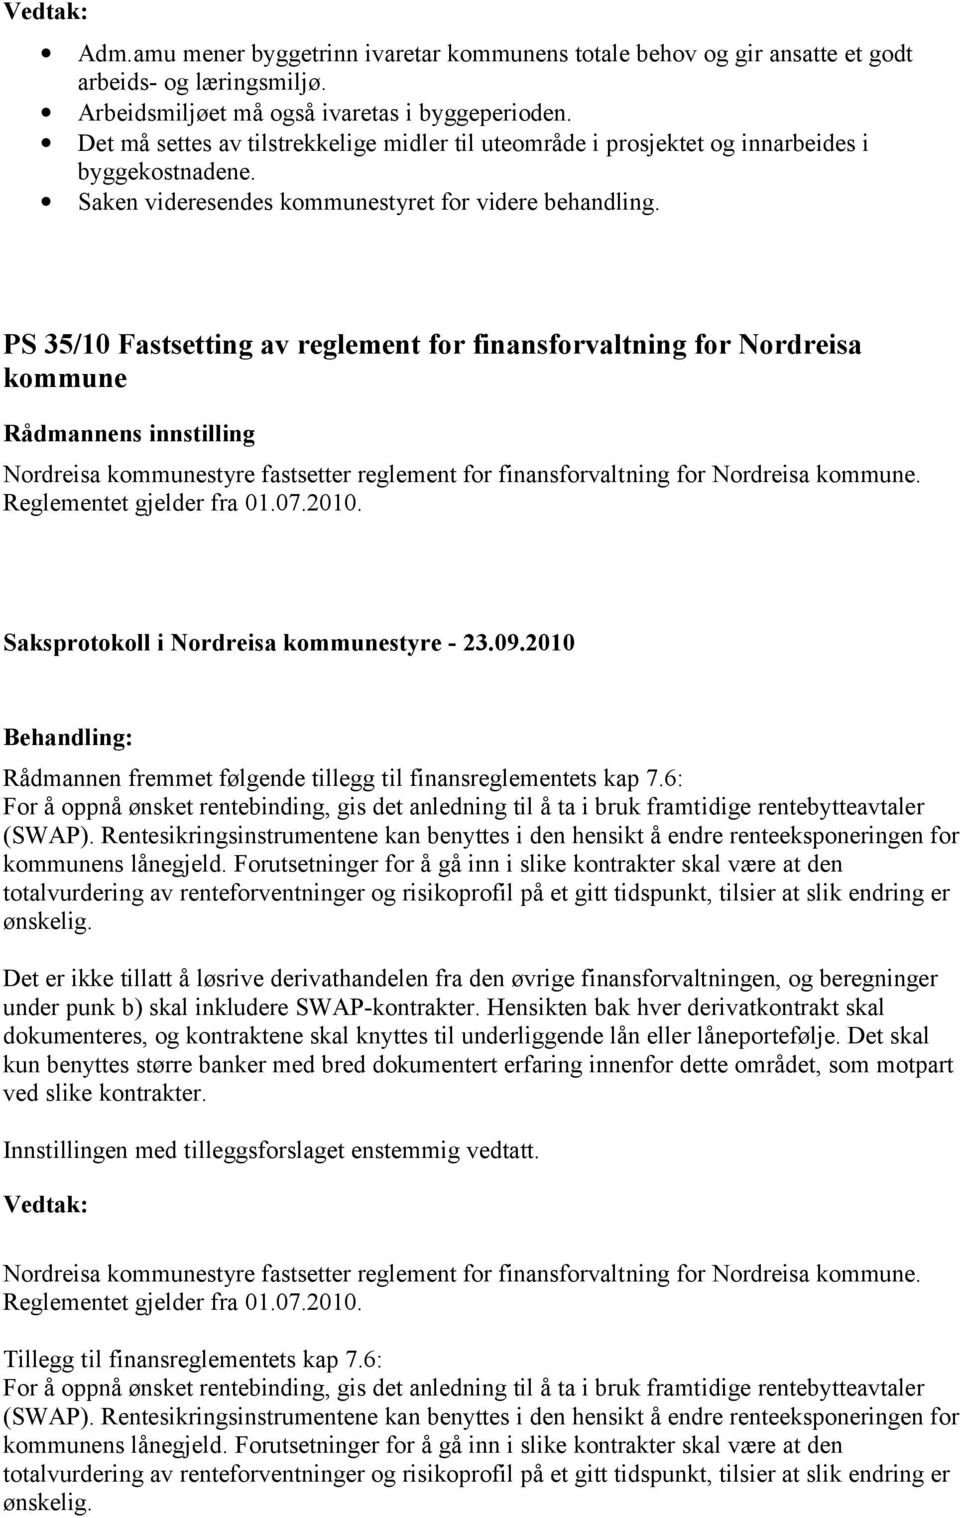 PS 35/10 Fastsetting av reglement for finansforvaltning for Nordreisa kommune Nordreisa kommunestyre fastsetter reglement for finansforvaltning for Nordreisa kommune. Reglementet gjelder fra 01.07.